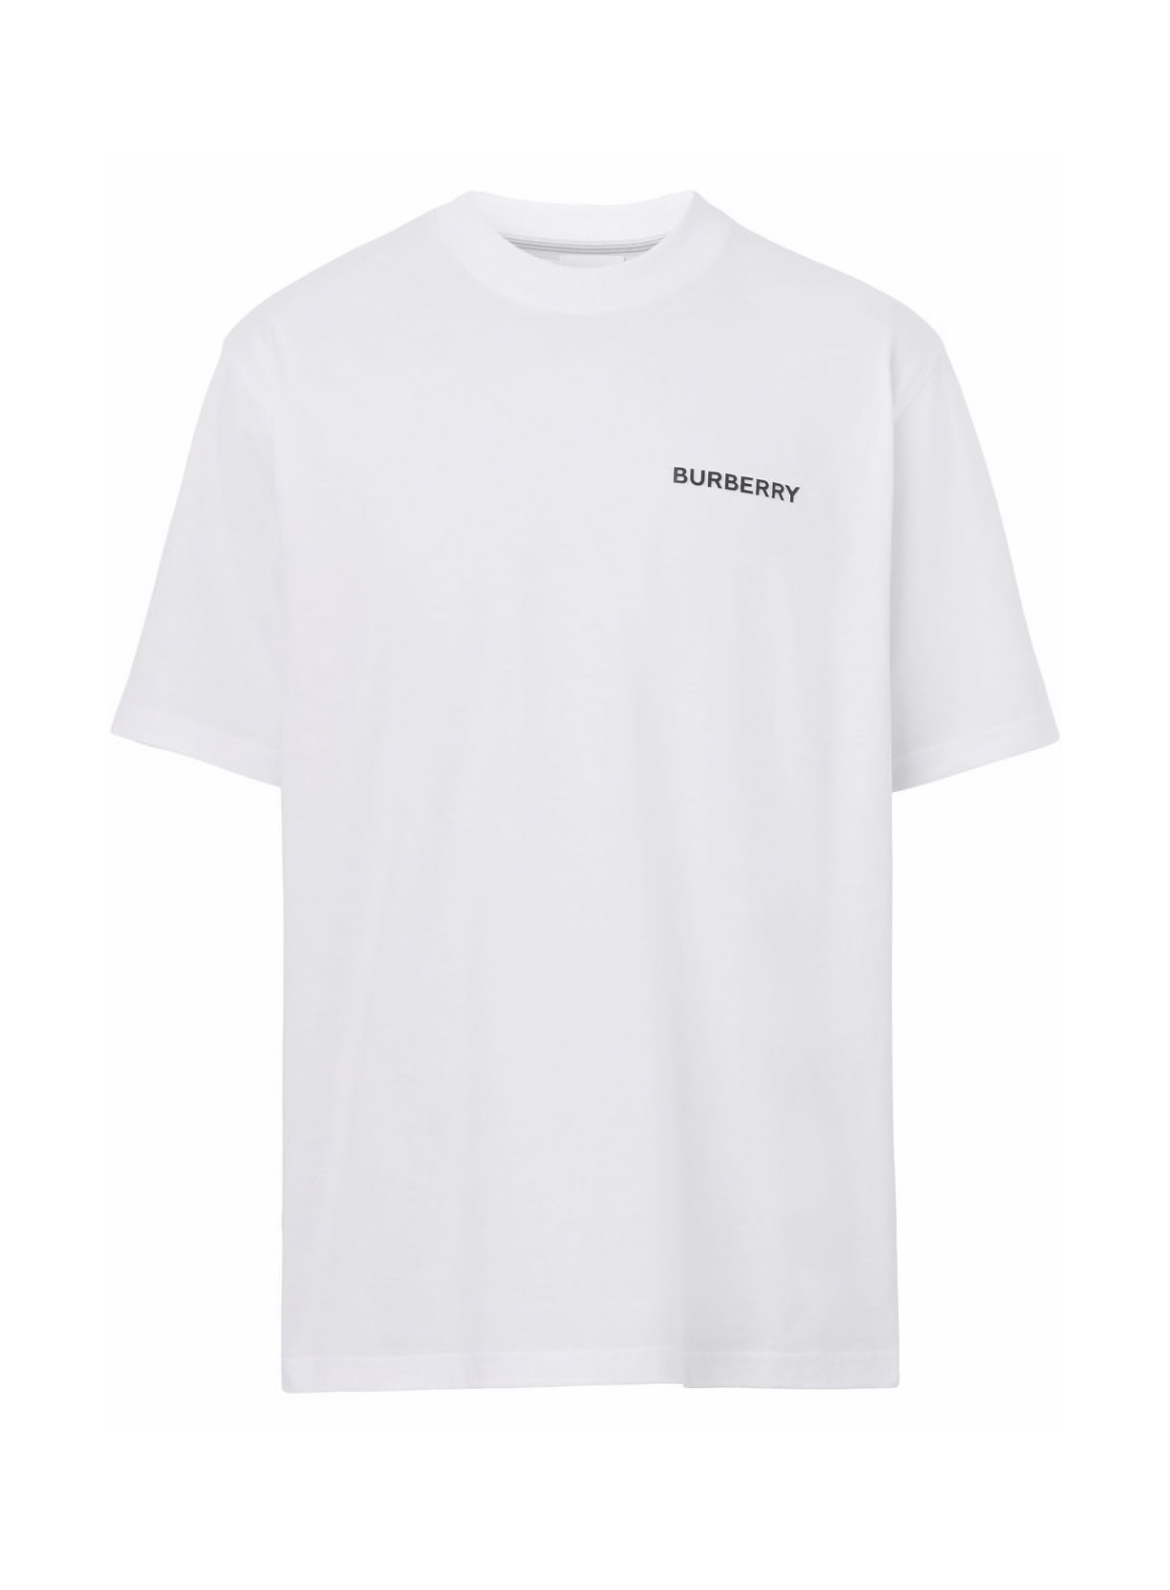 Burberry logo print cotton tshirt